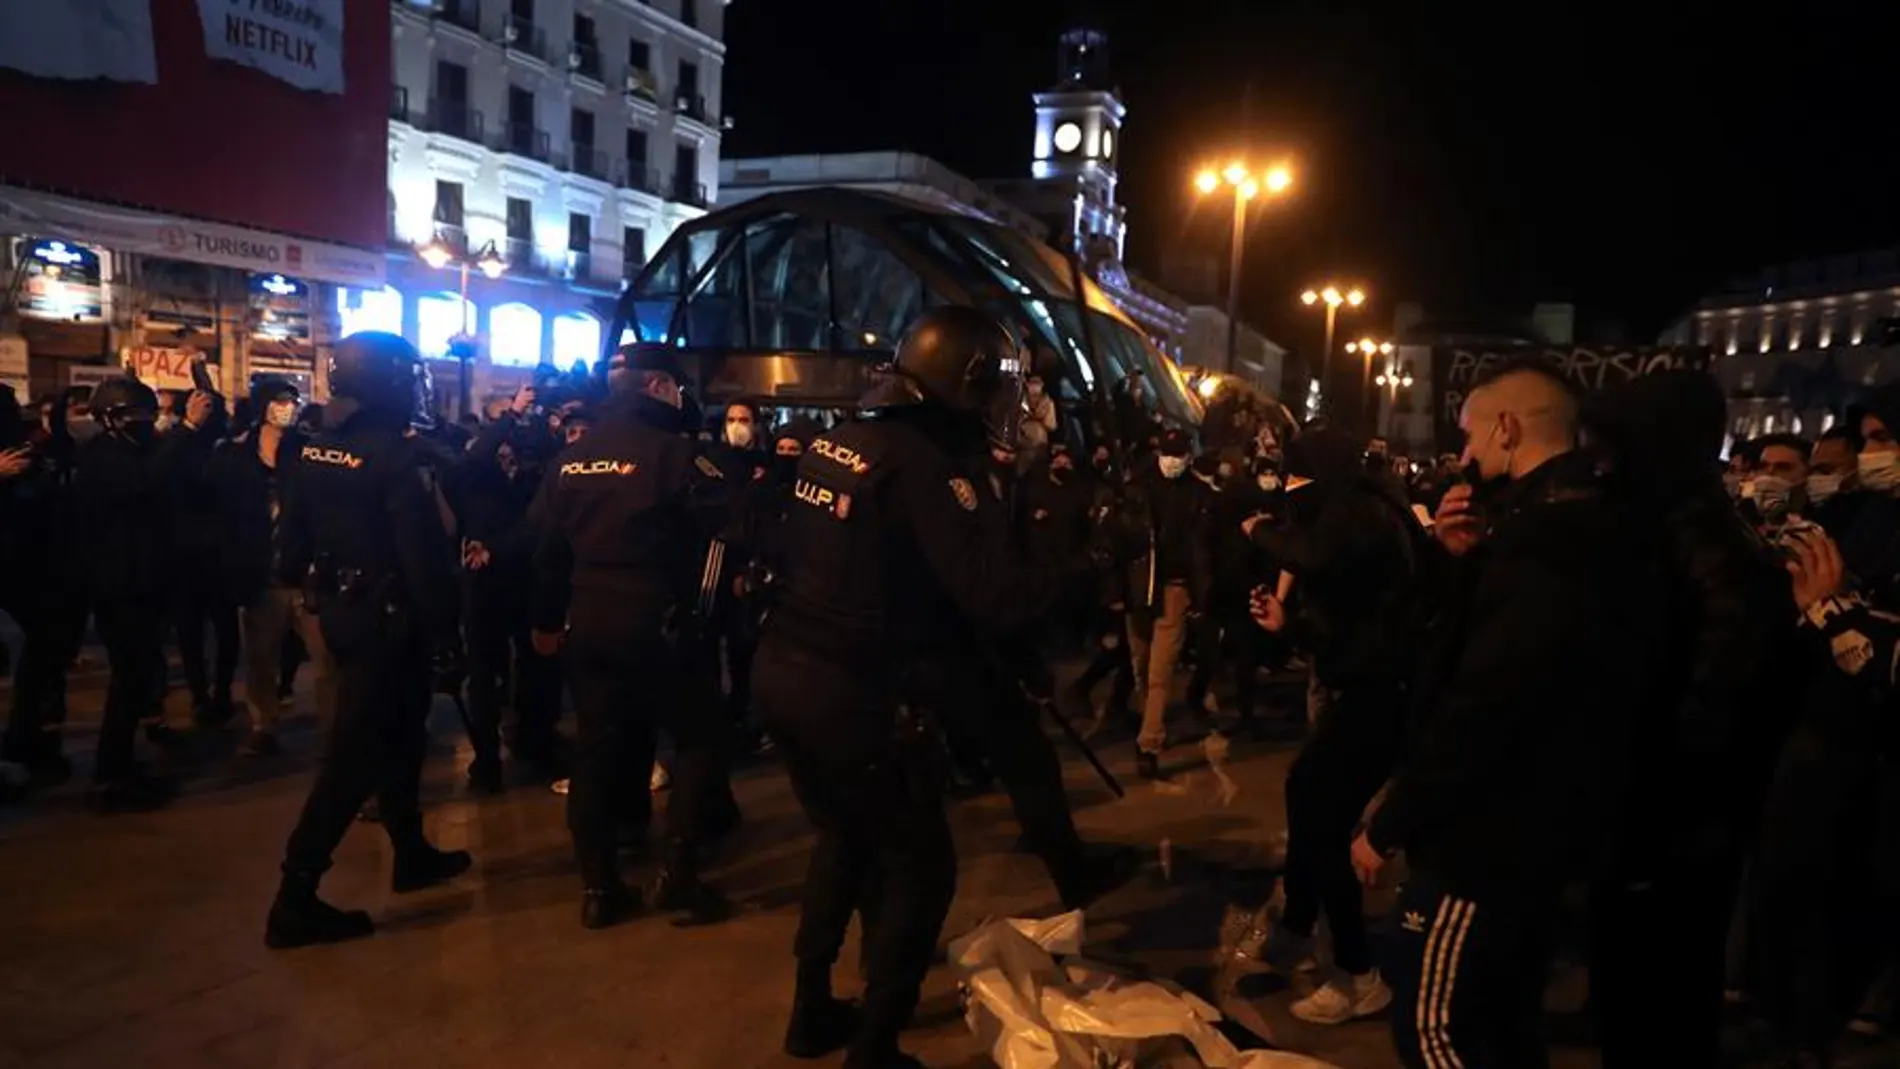 Antidisturbios intervienen en la manifestación en apoyo a Pablo Hasél en la Puerta del Sol